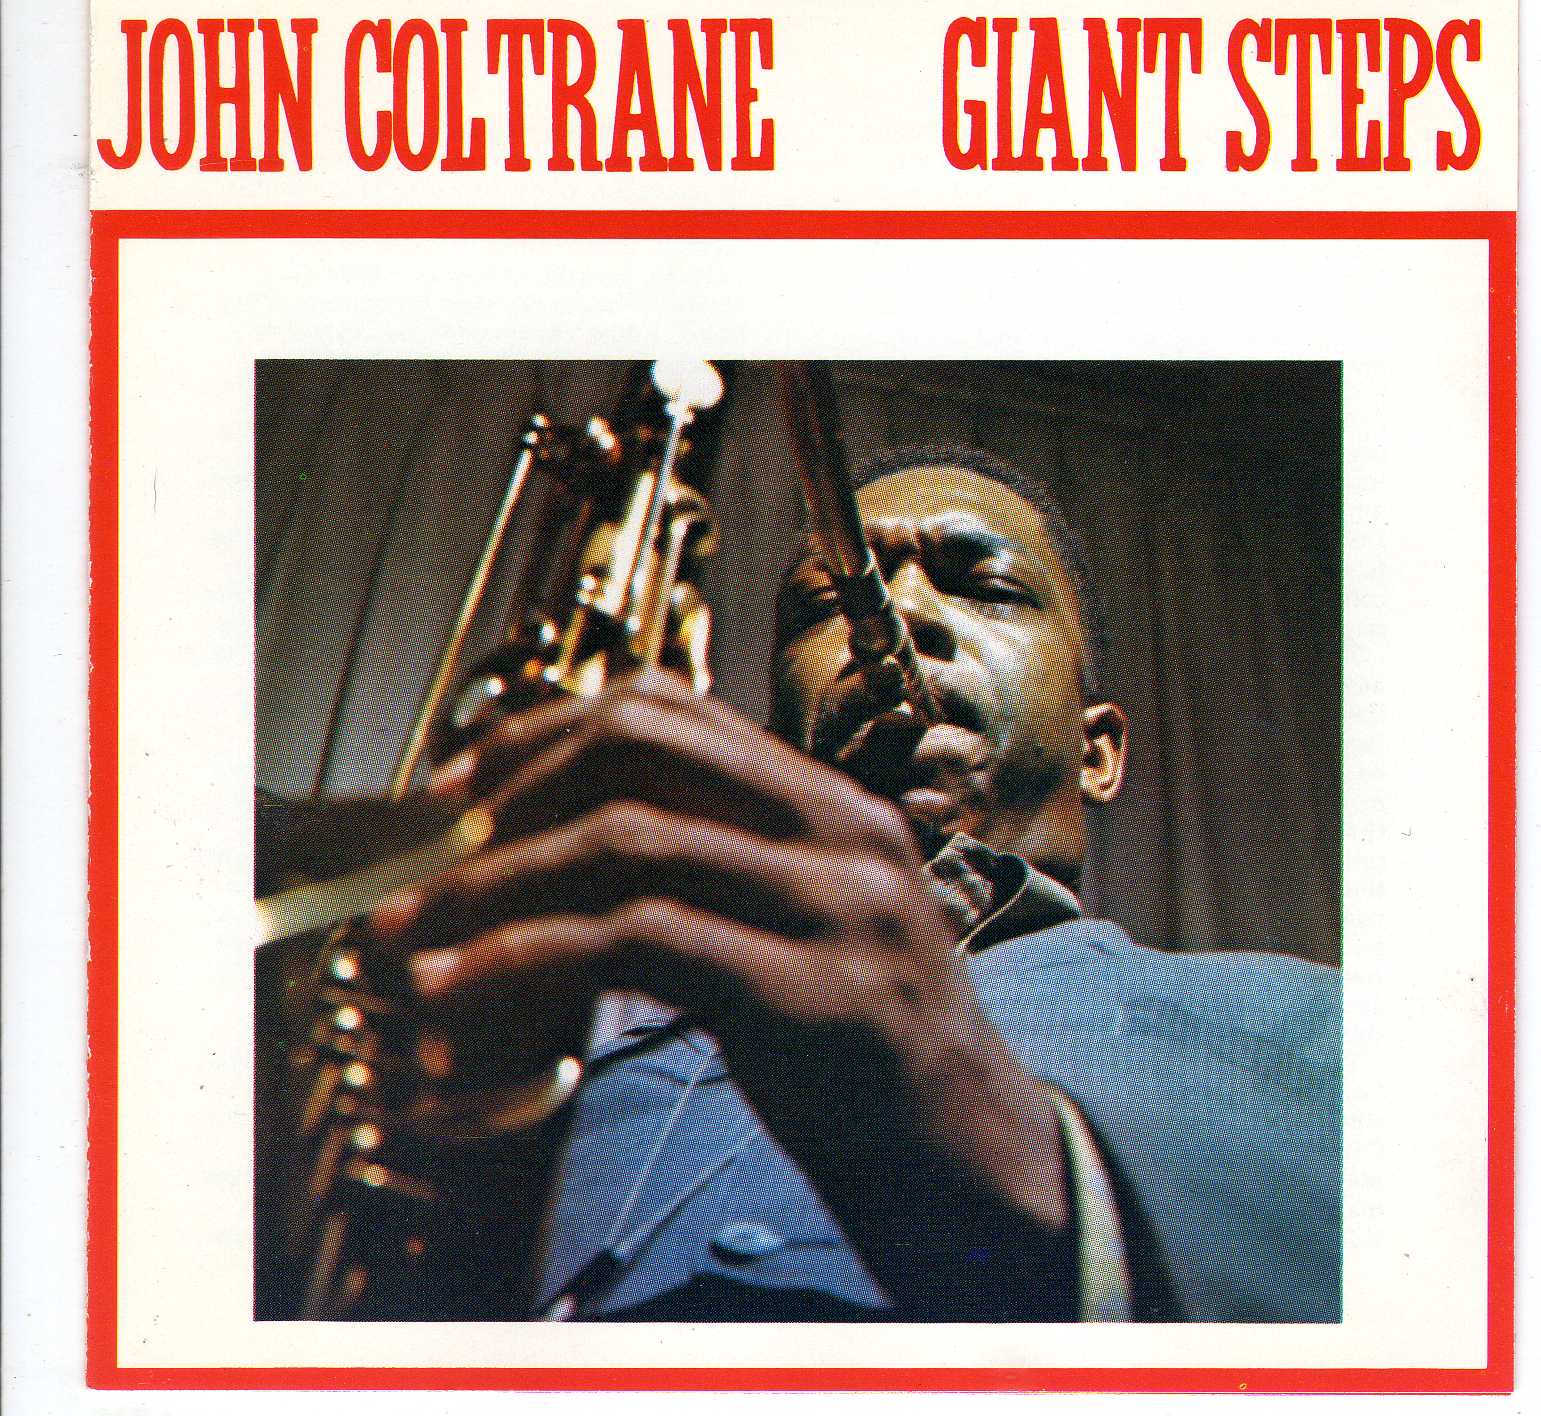 Jazz Rock Fusion Guitar John Coltrane 1960 Giant Steps